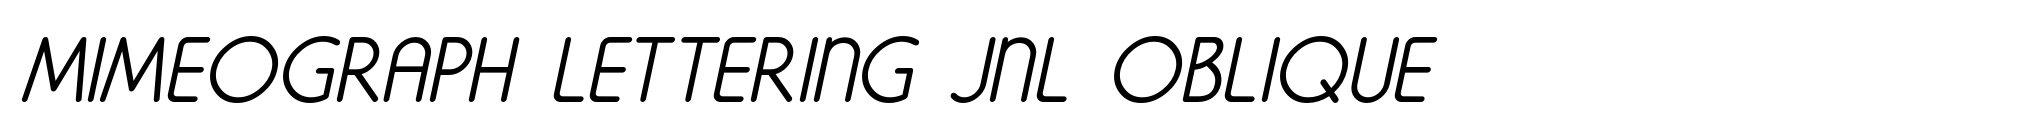 Mimeograph Lettering JNL Oblique image